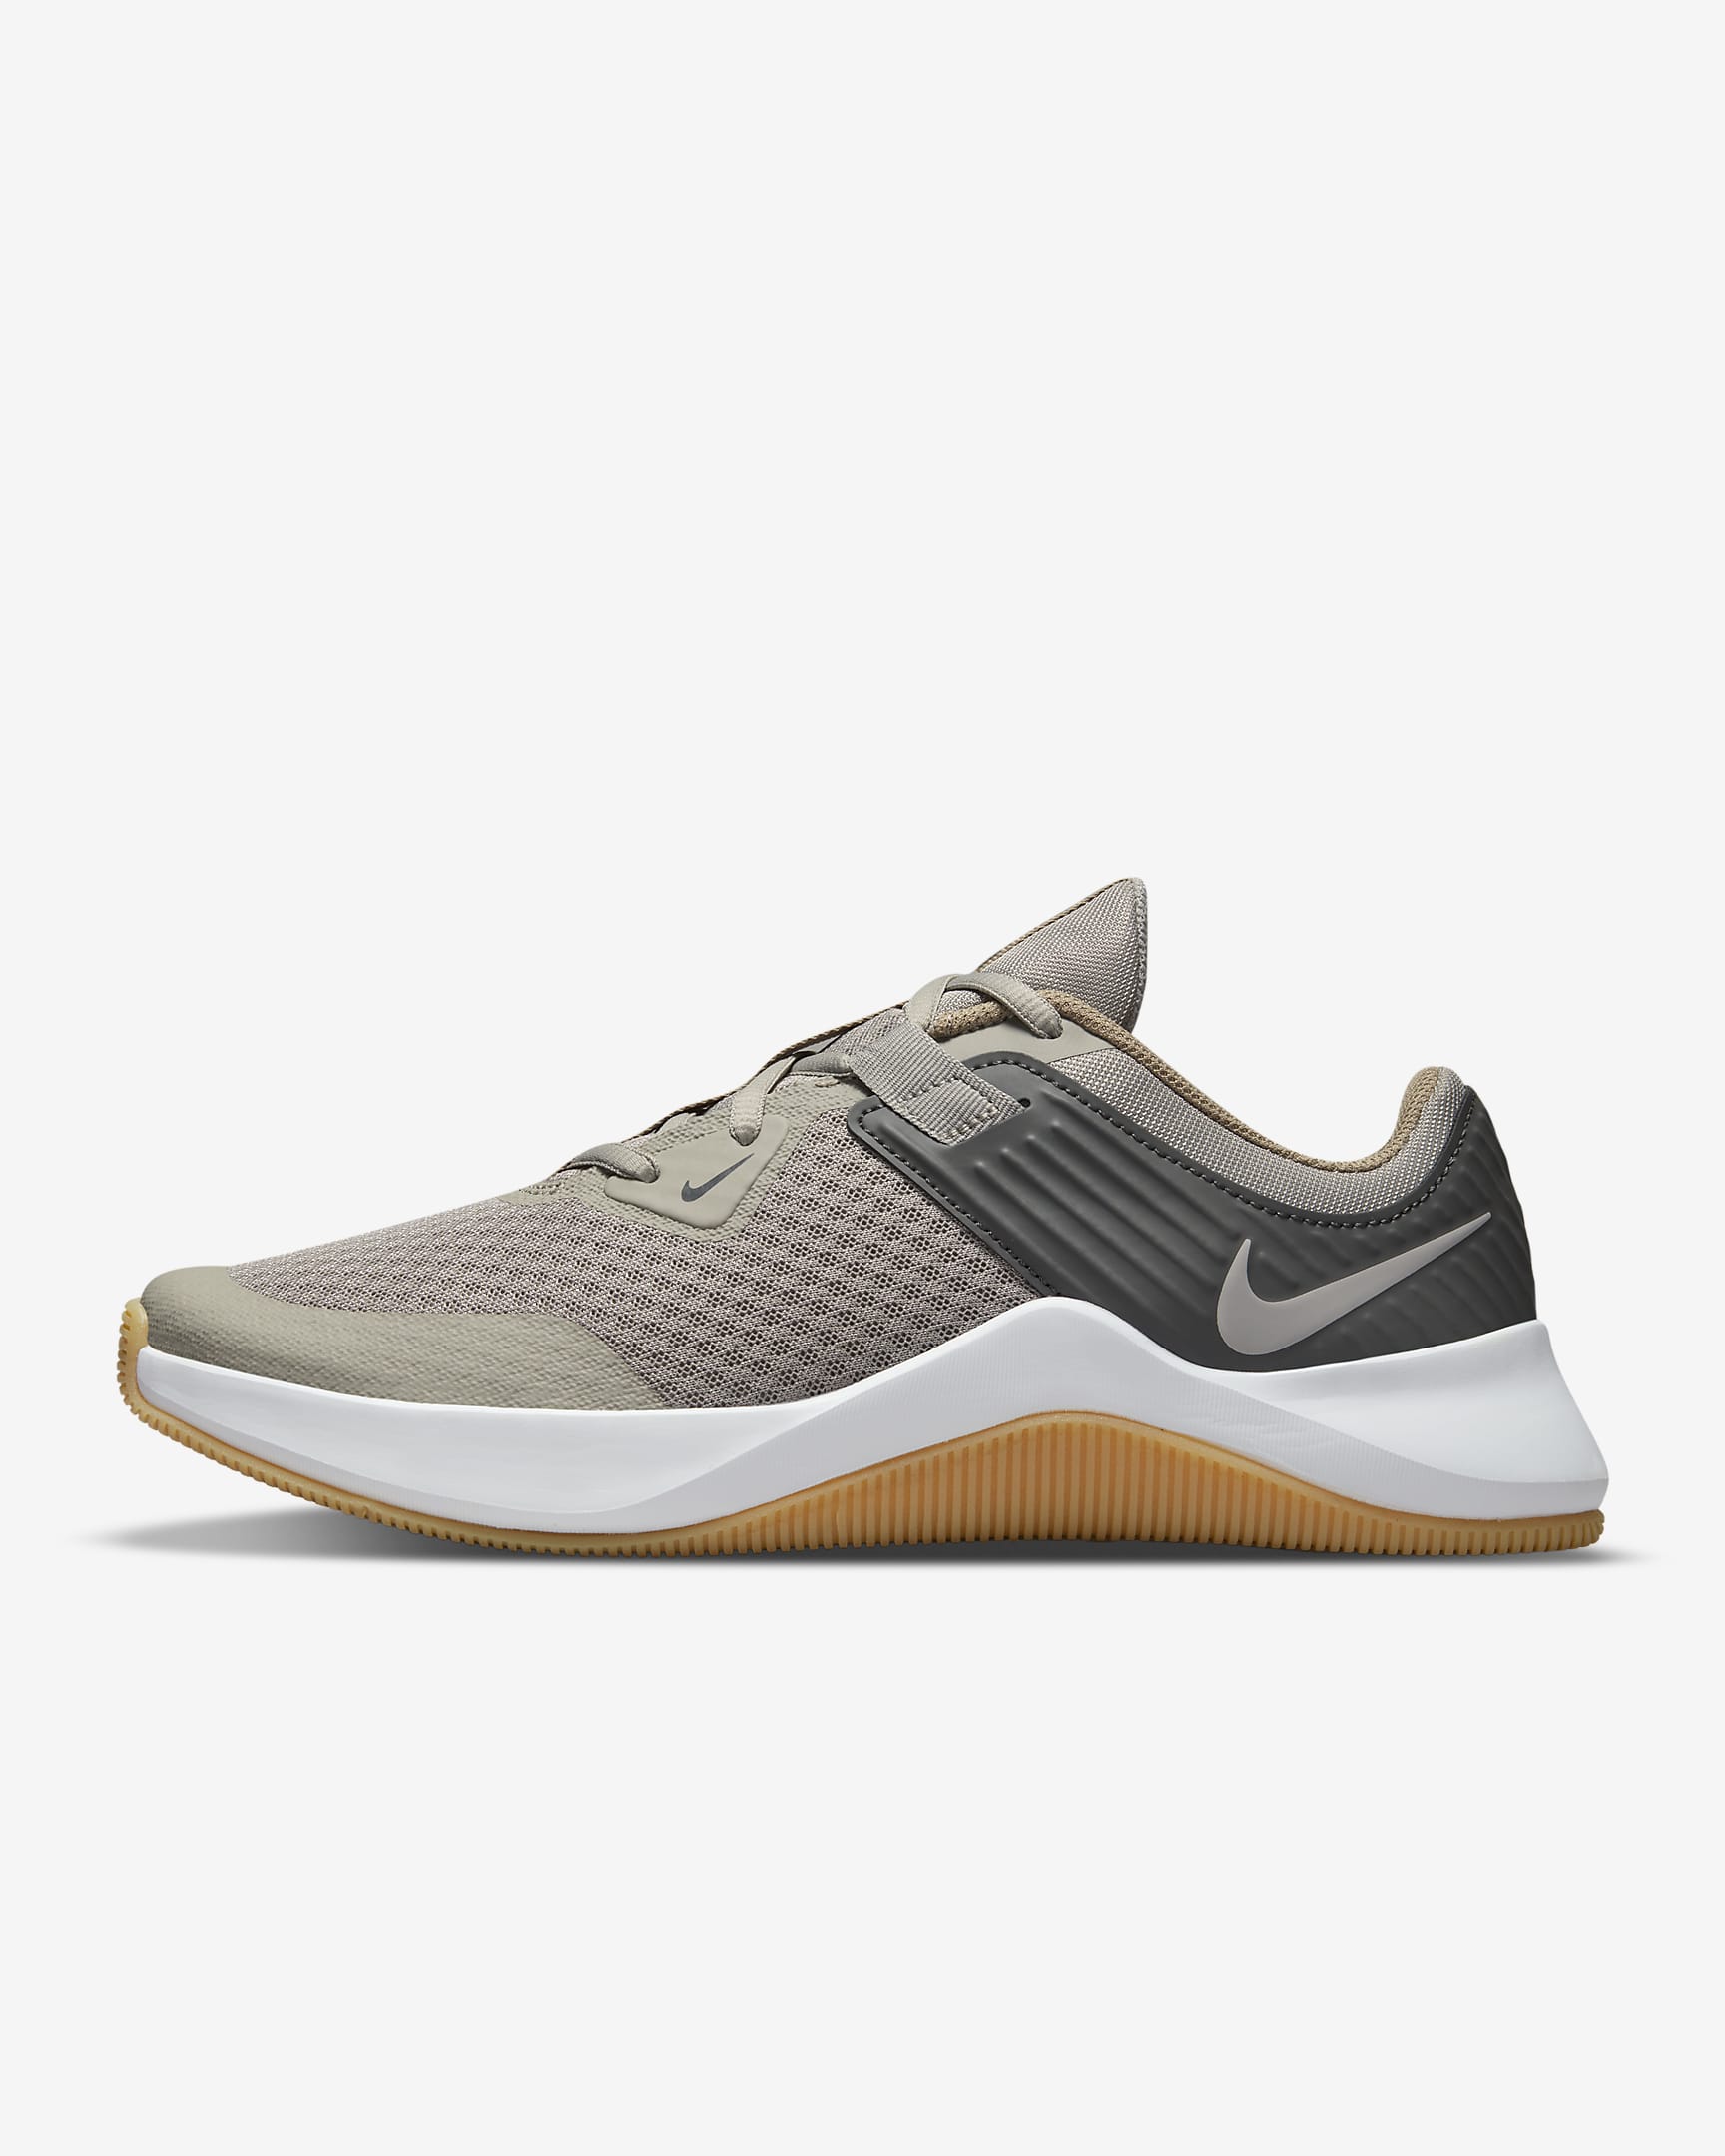 Nike MC Trainer Men\'s Training Shoes Cobblestone/Iron Grey/Khaki/Light Iron Ore